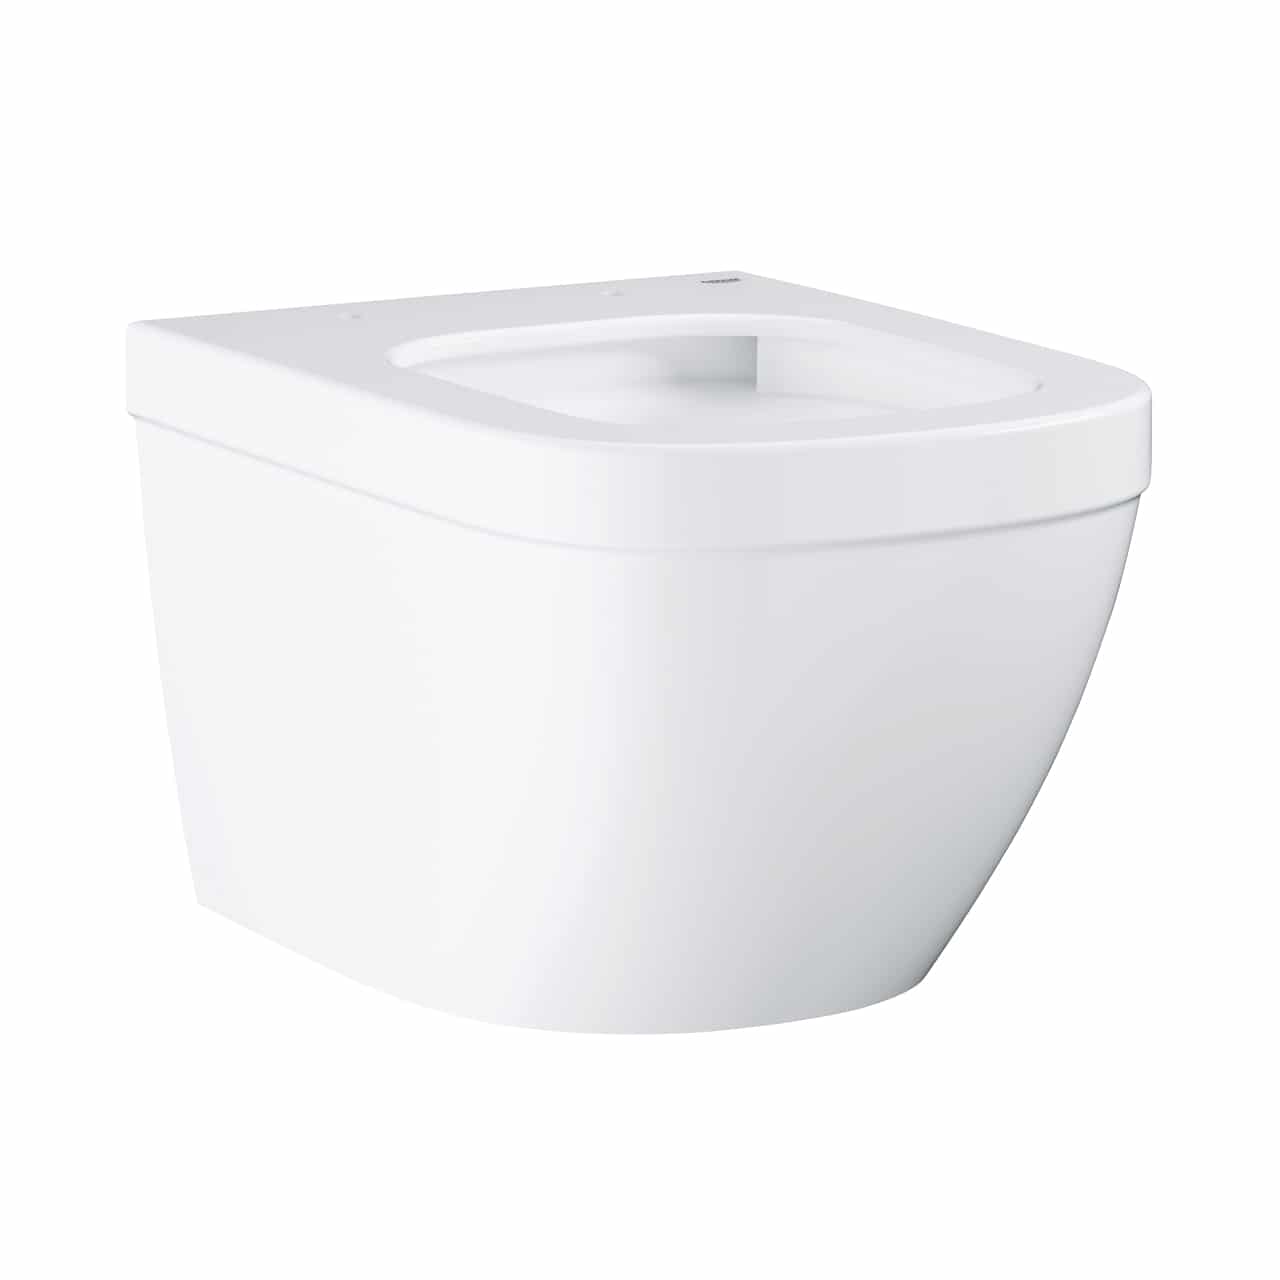 Vase wc - Vas wc suspendat Grohe Euro Ceramic Compact Rimless TripleVortex 49x37 cm, alb, laguna.ro